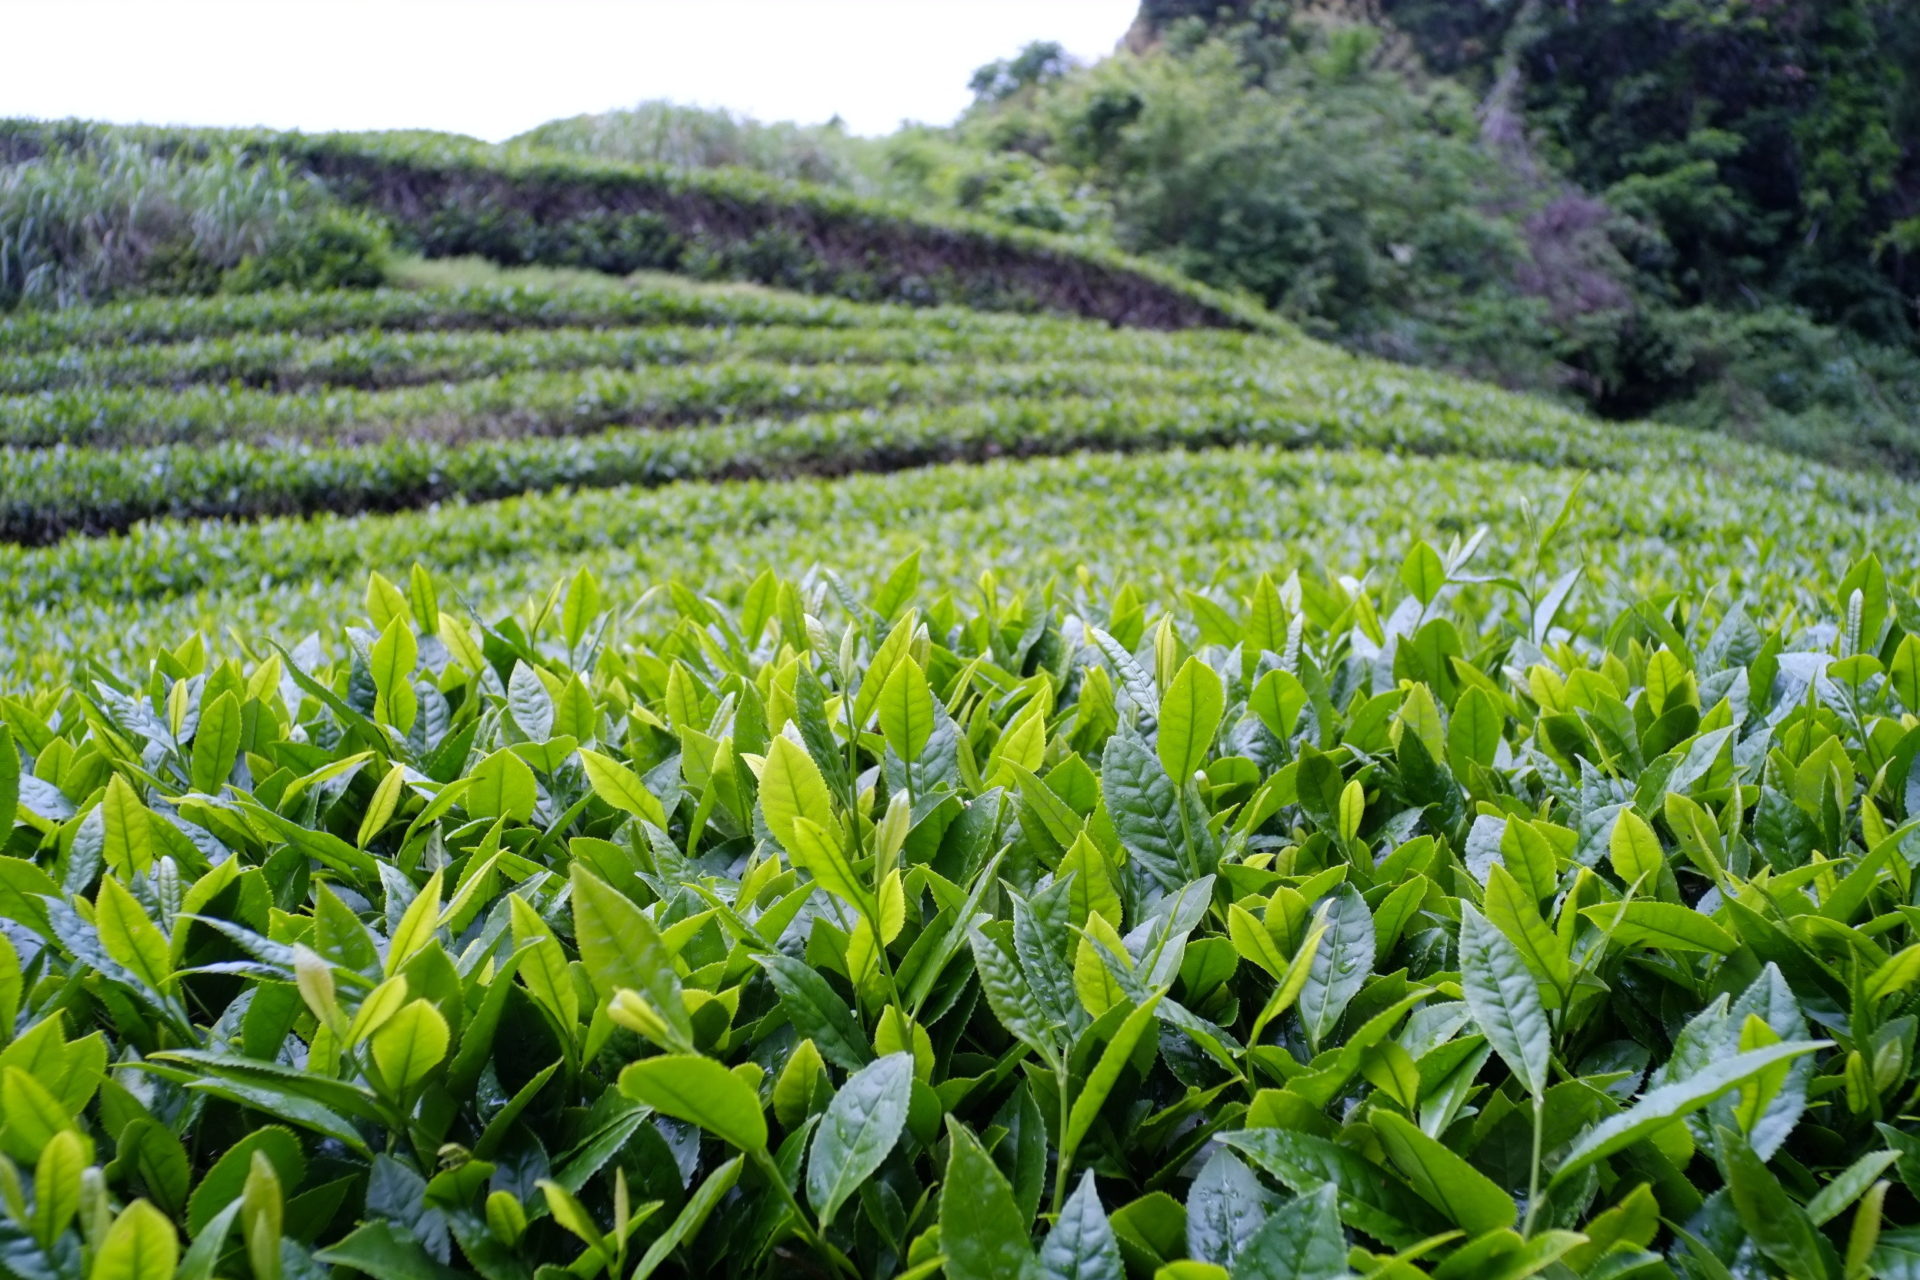 Tè verde, i benefici di una bevanda considerata un ottimo antibatterico naturale